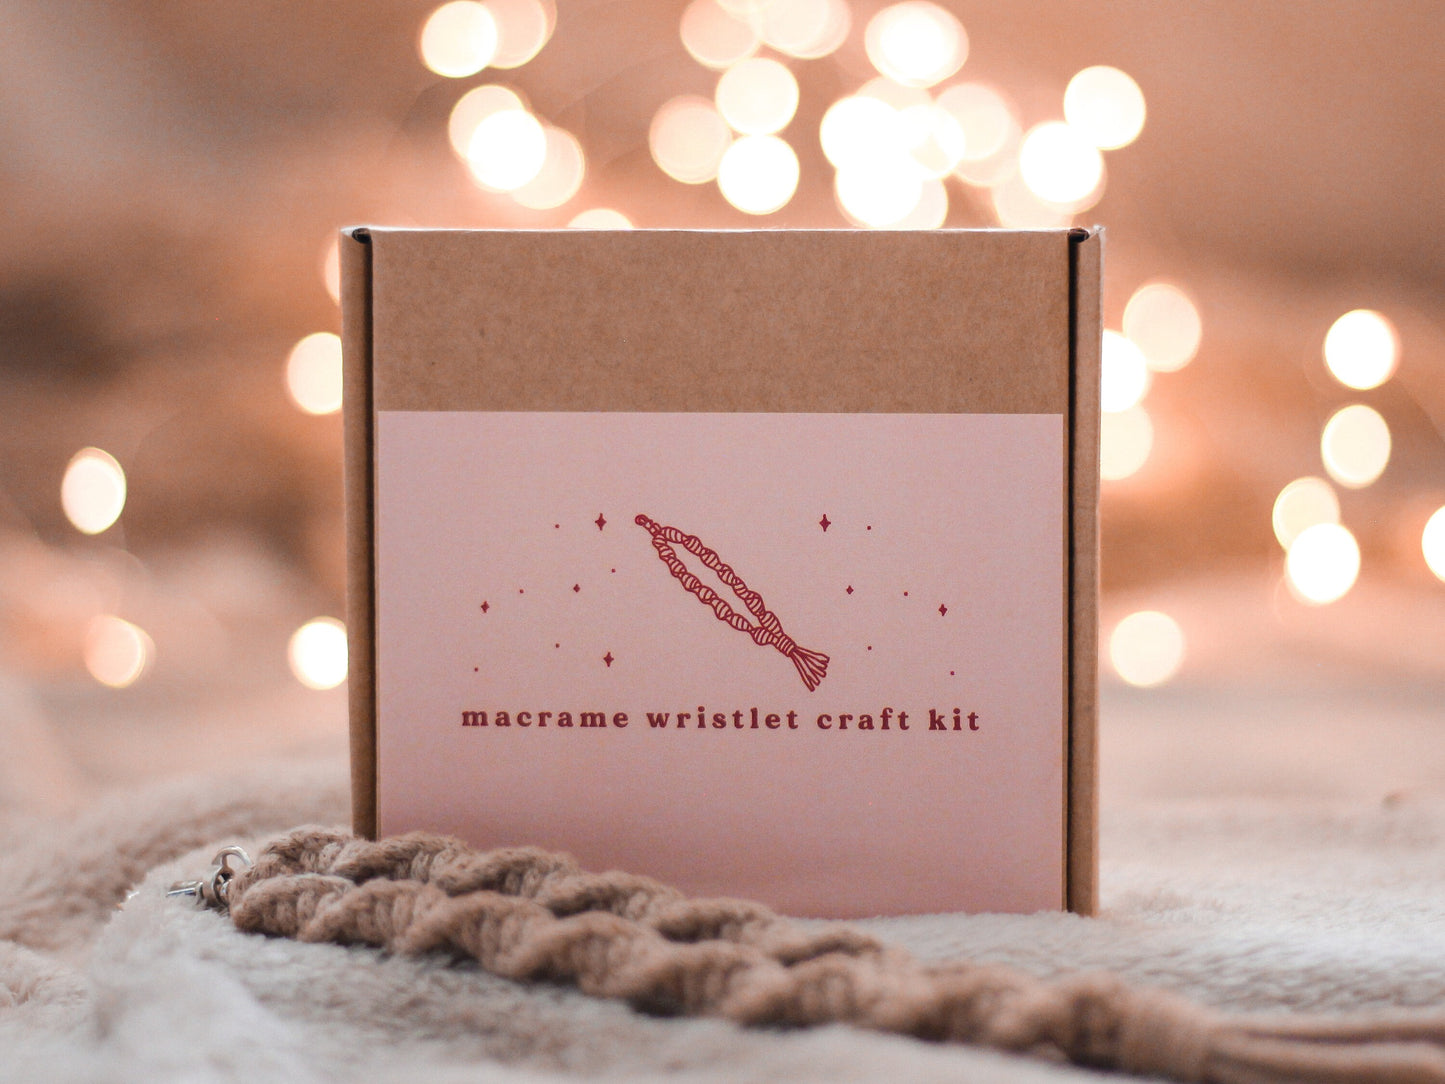 Make Your Own Macrame Wristlet Craft Kit